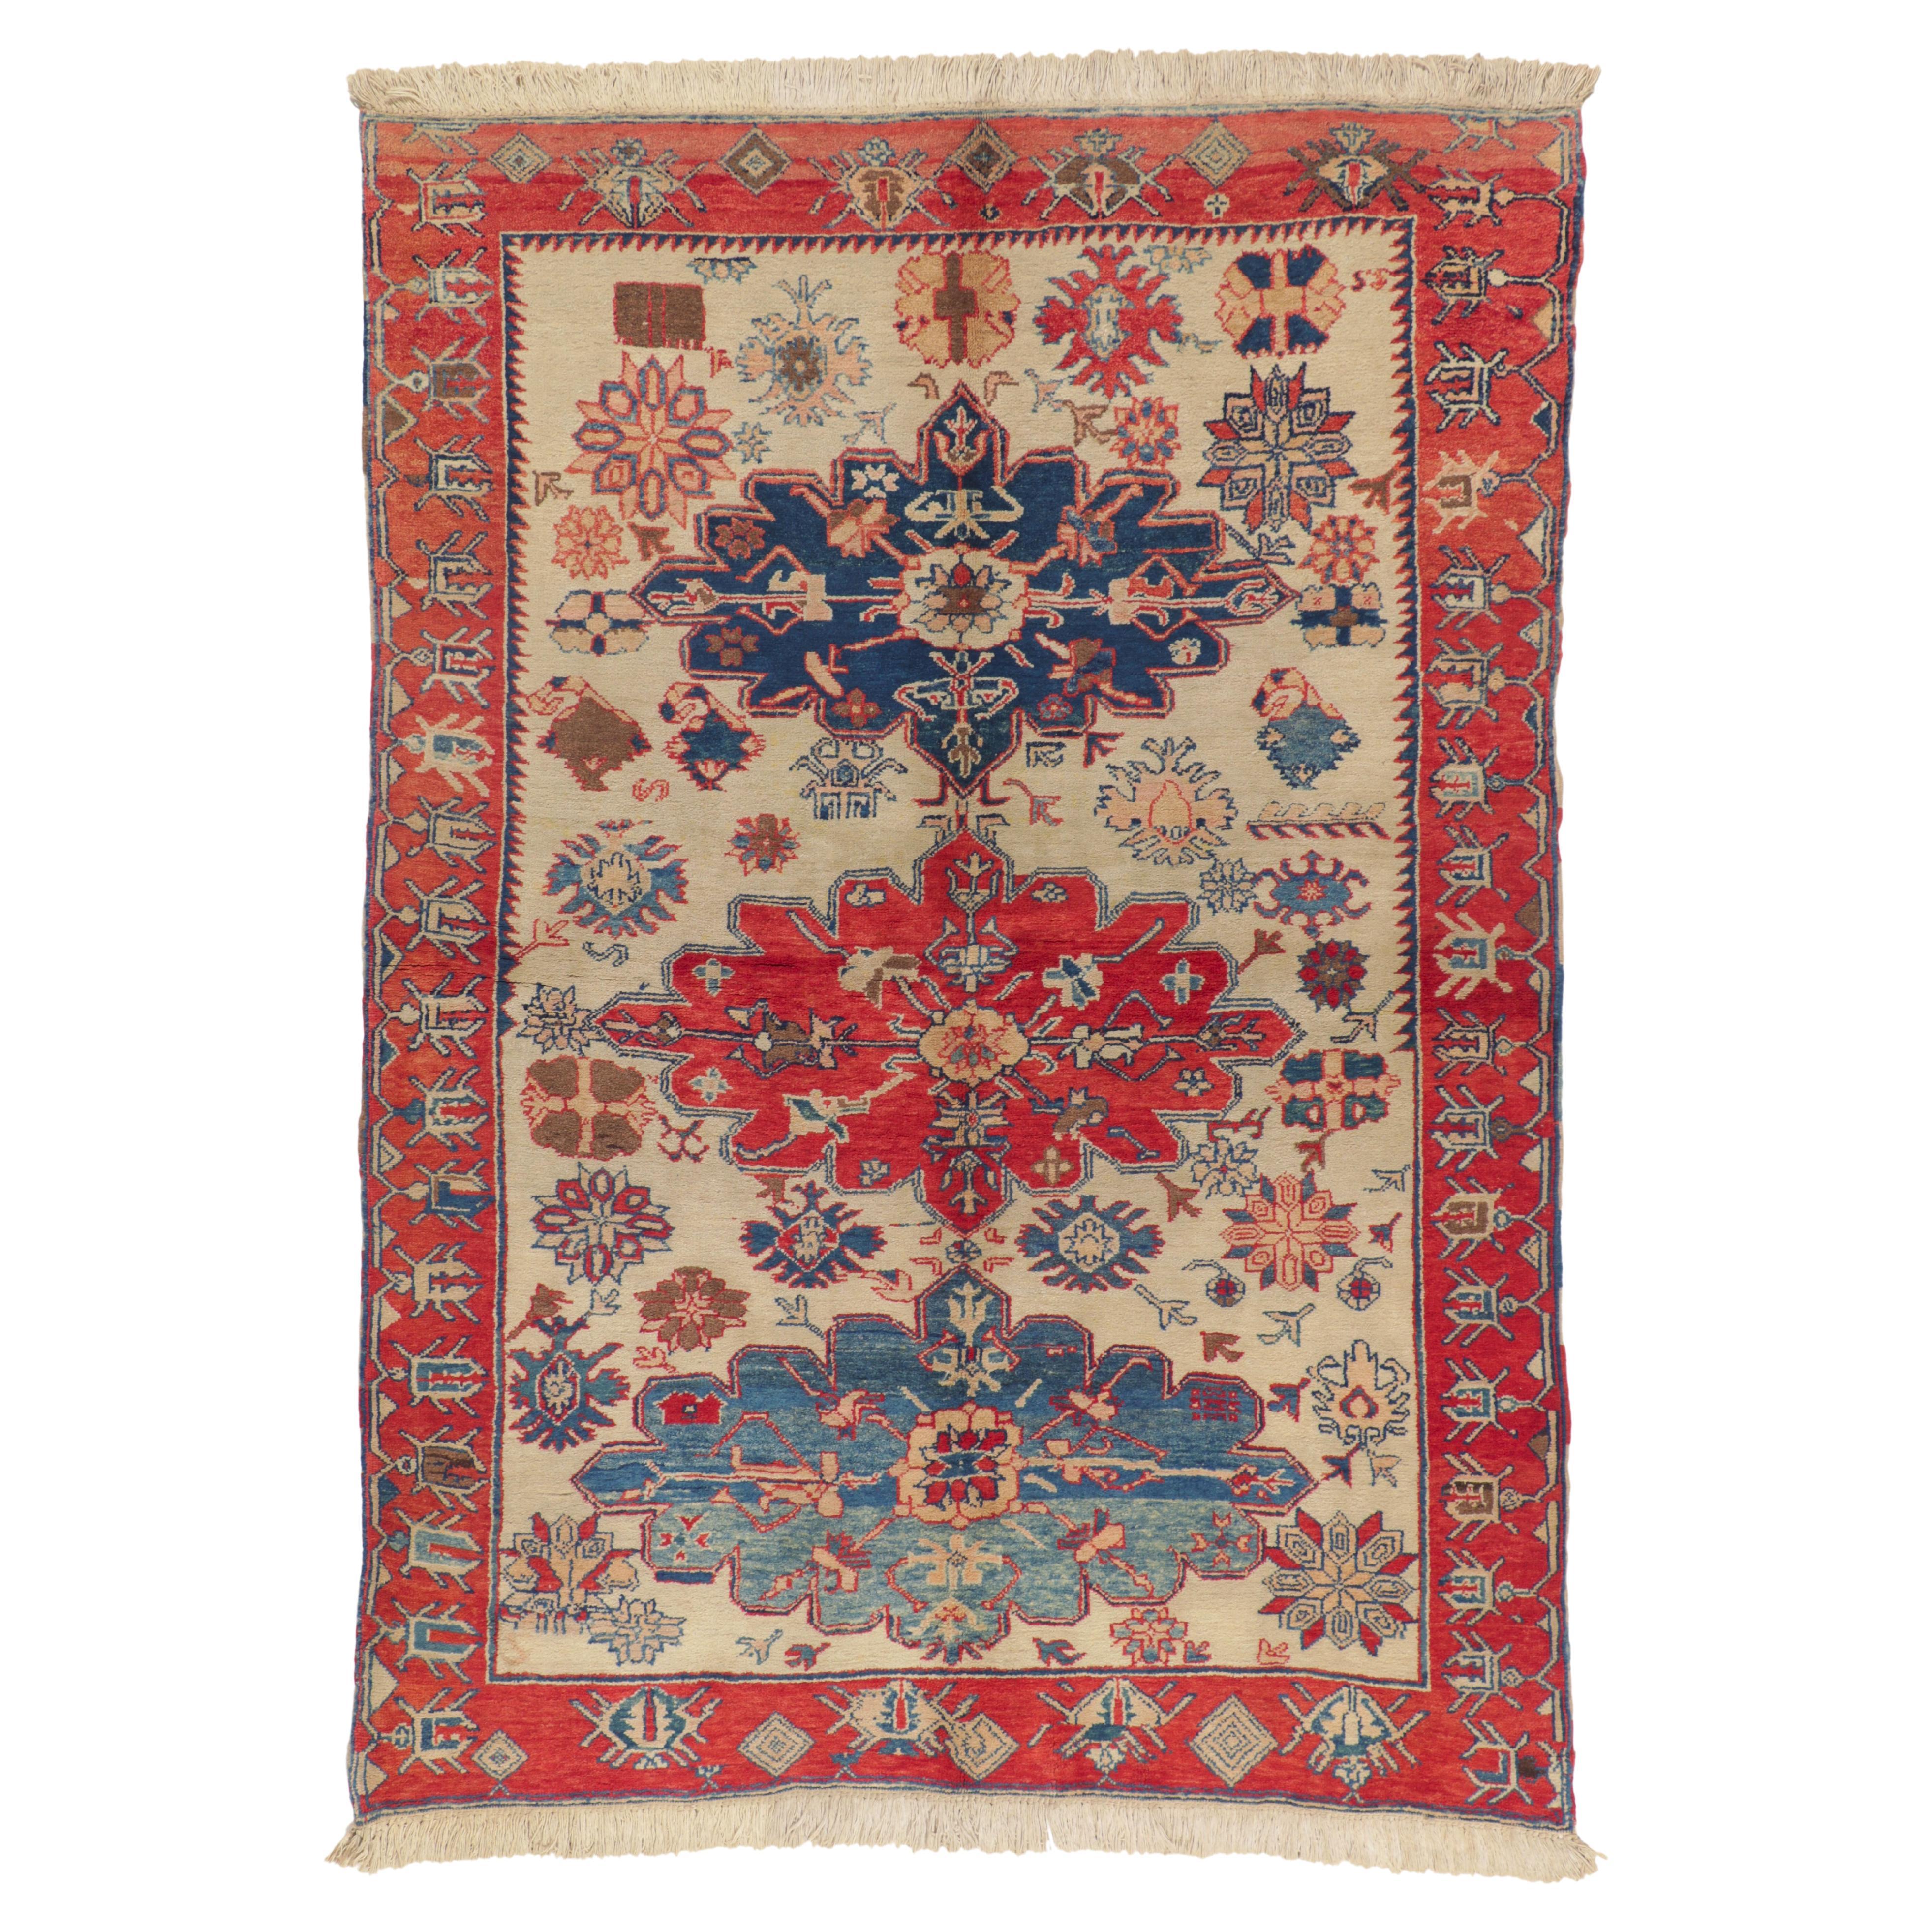 Türkischer Vintage-Teppich im modernen, traditionellen Stil